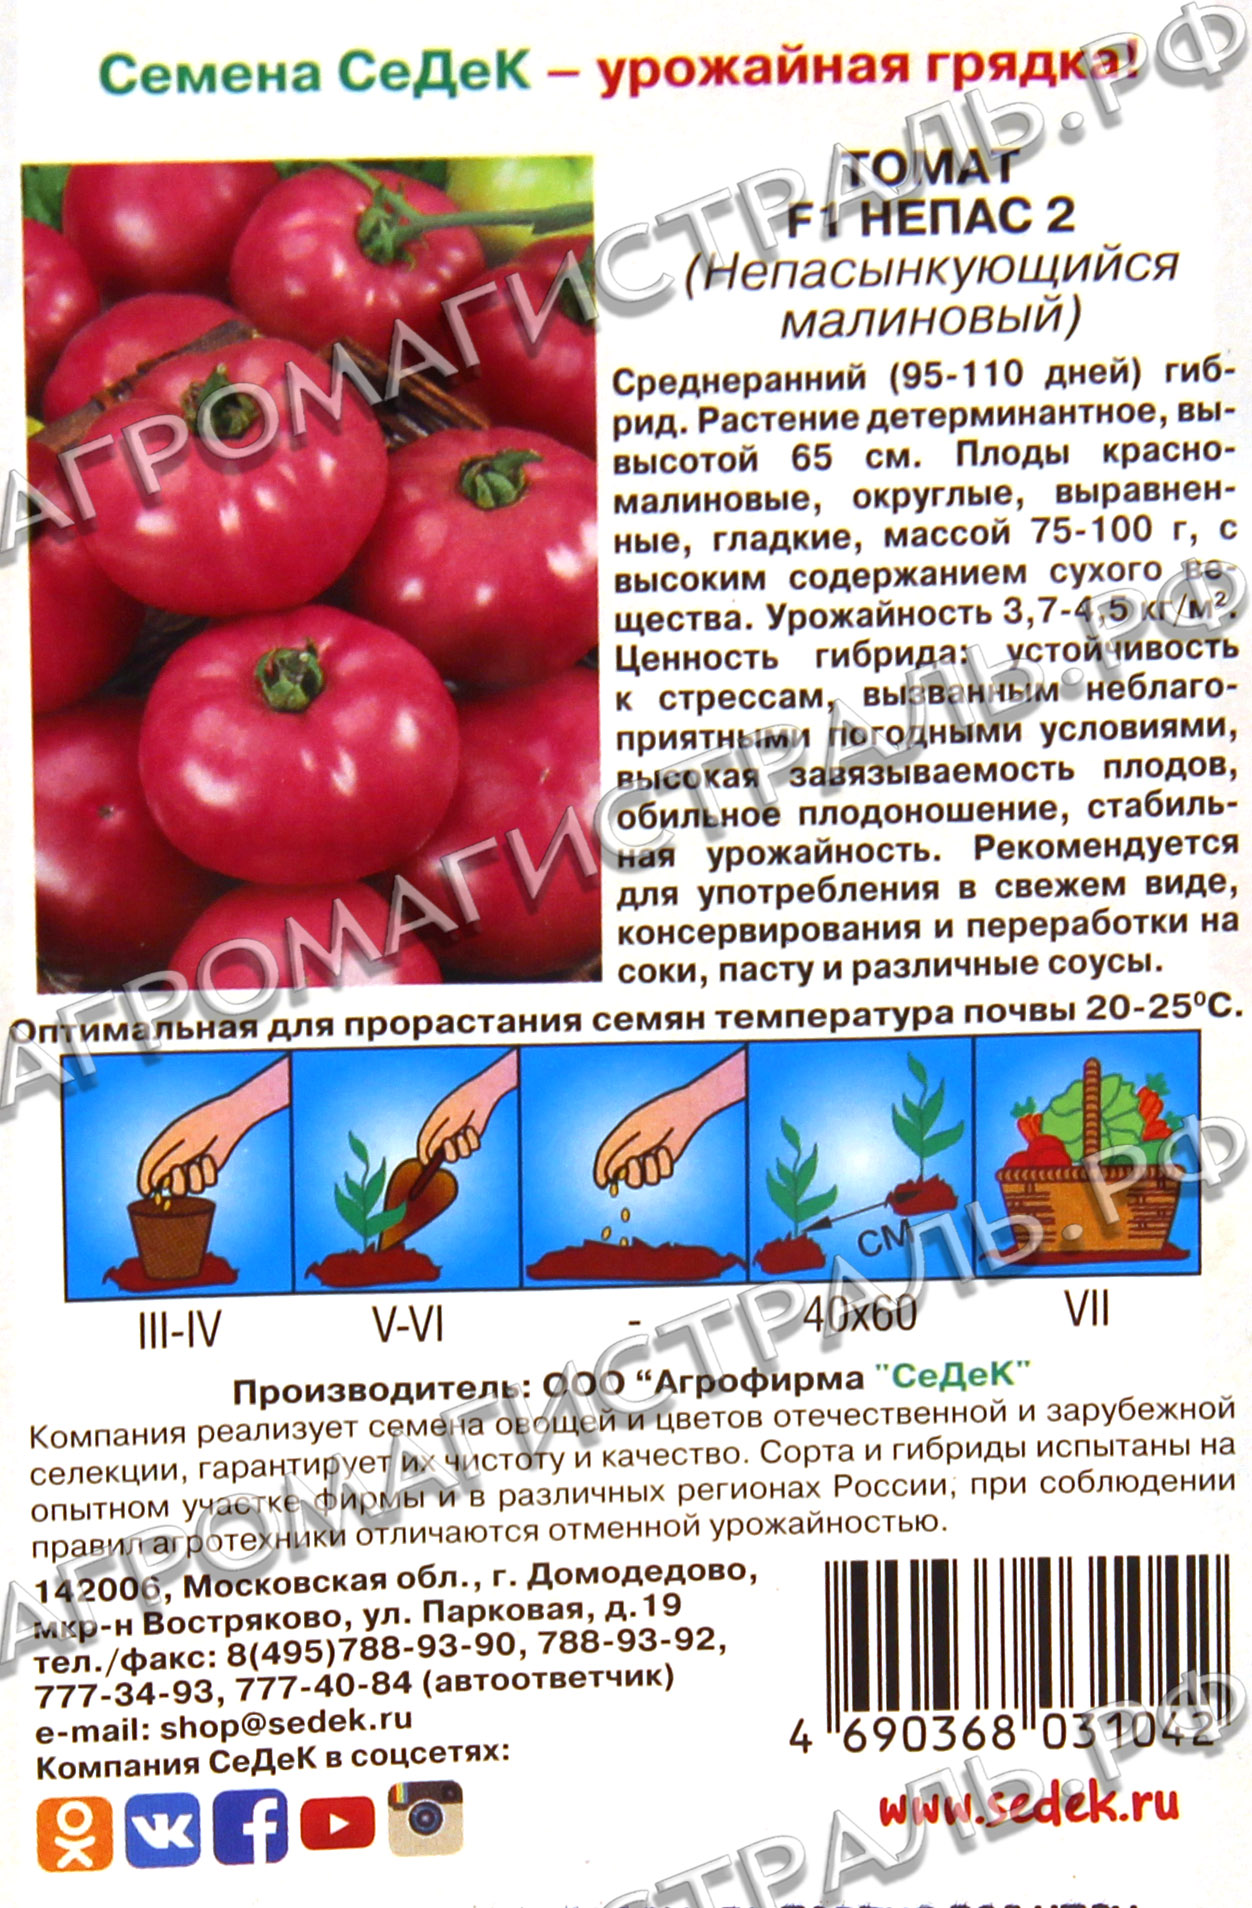 Детерминантный сорт томатов: что это такое и чем эти помидоры отличаются от индетерминантных и штамбовых